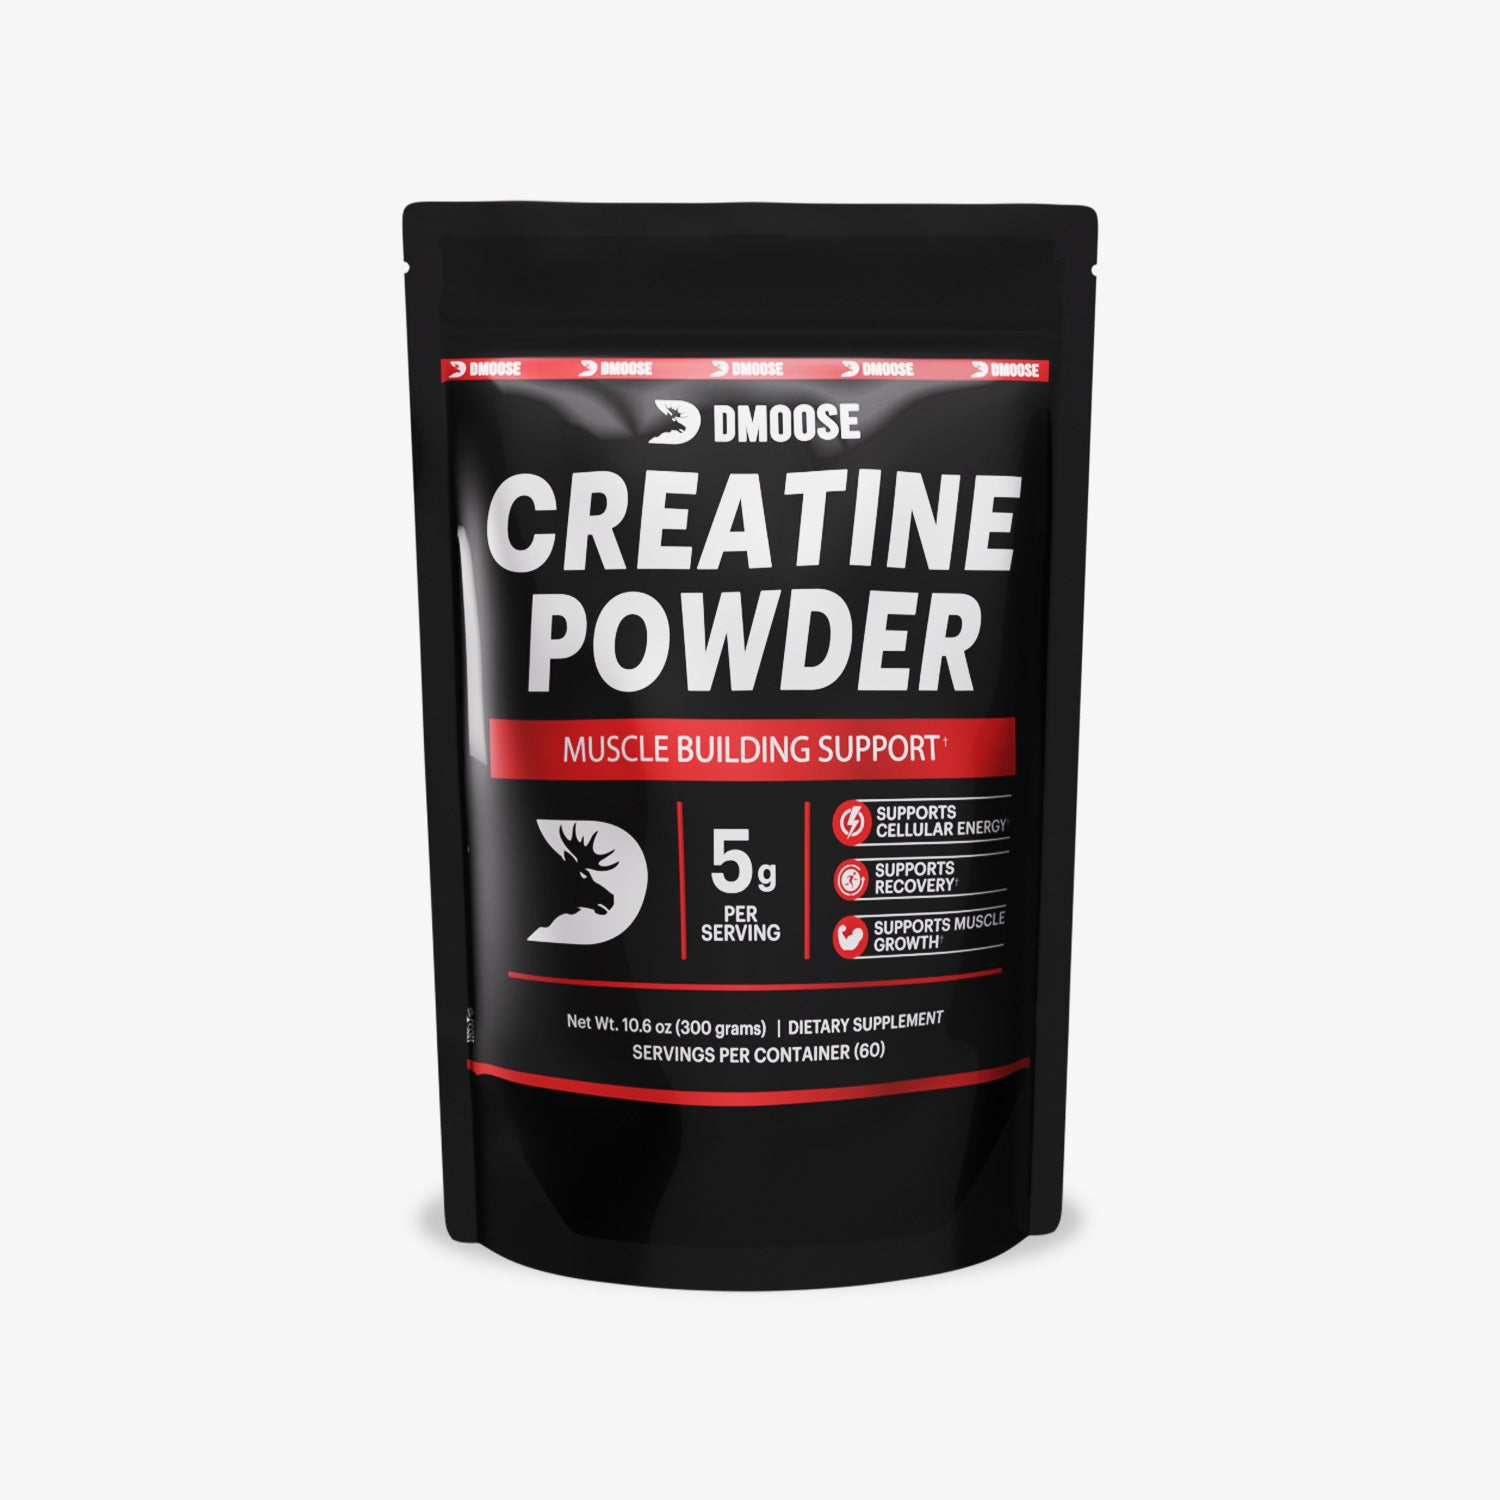 Creatine Monohydrate Powder 5G - Premium Creatine Supplement for